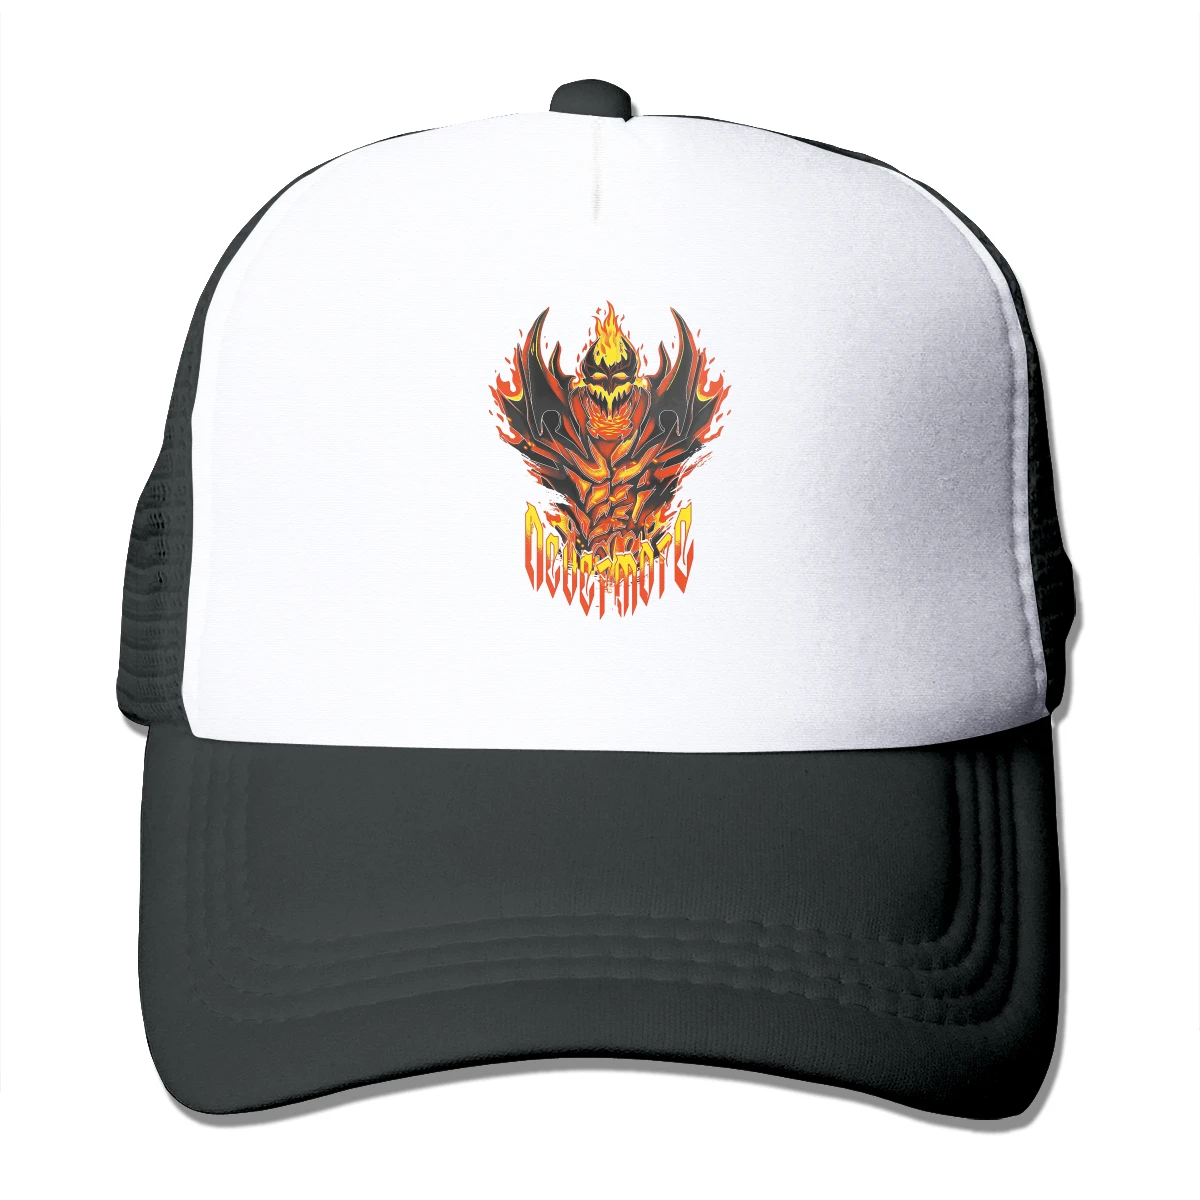 

Бейсболка с рисунком огня DOTA Hero, сетчатая шляпа для стремления игры в реальном времени для мужчин и женщин, стильные головные уборы для трак...